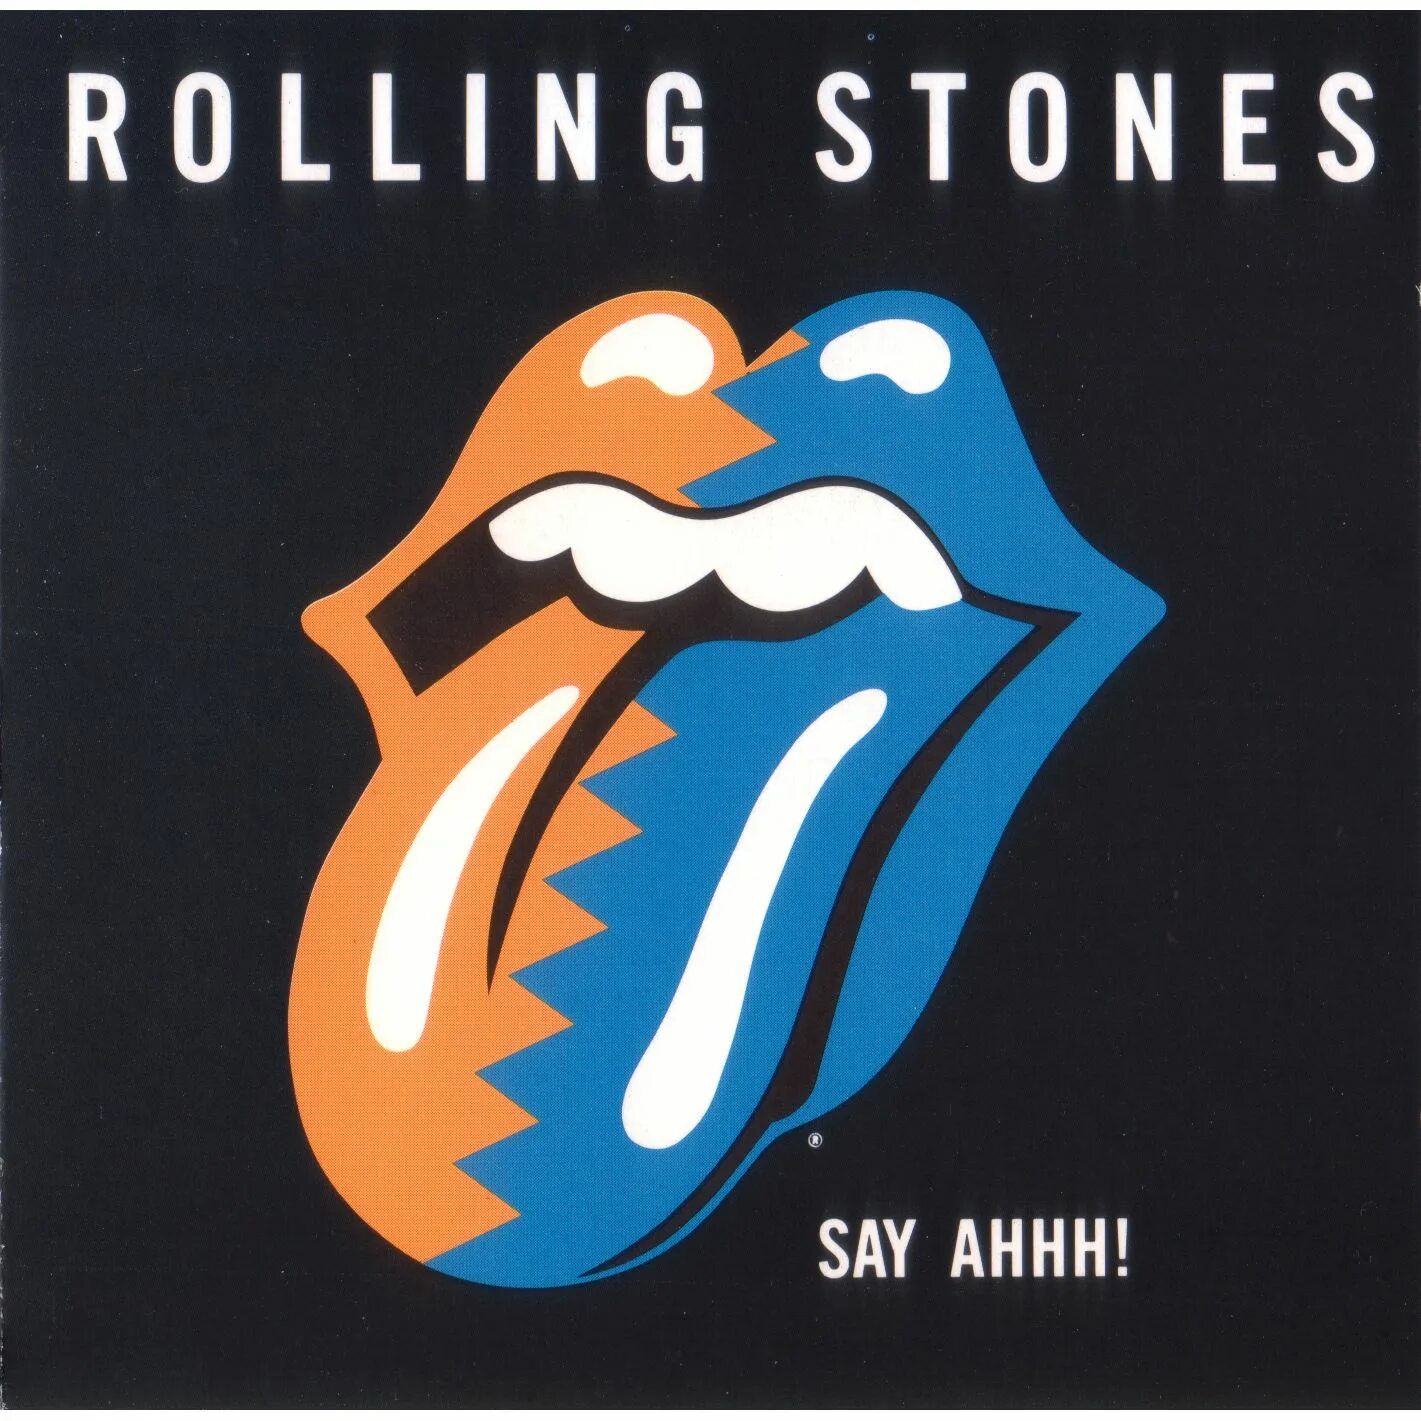 Роллинг стоунз обложки альбомов. Rolling Stones grrr обложка альбома. Обложки альбомов Роллинг стон. Обложки дисков the Rolling Stones,.